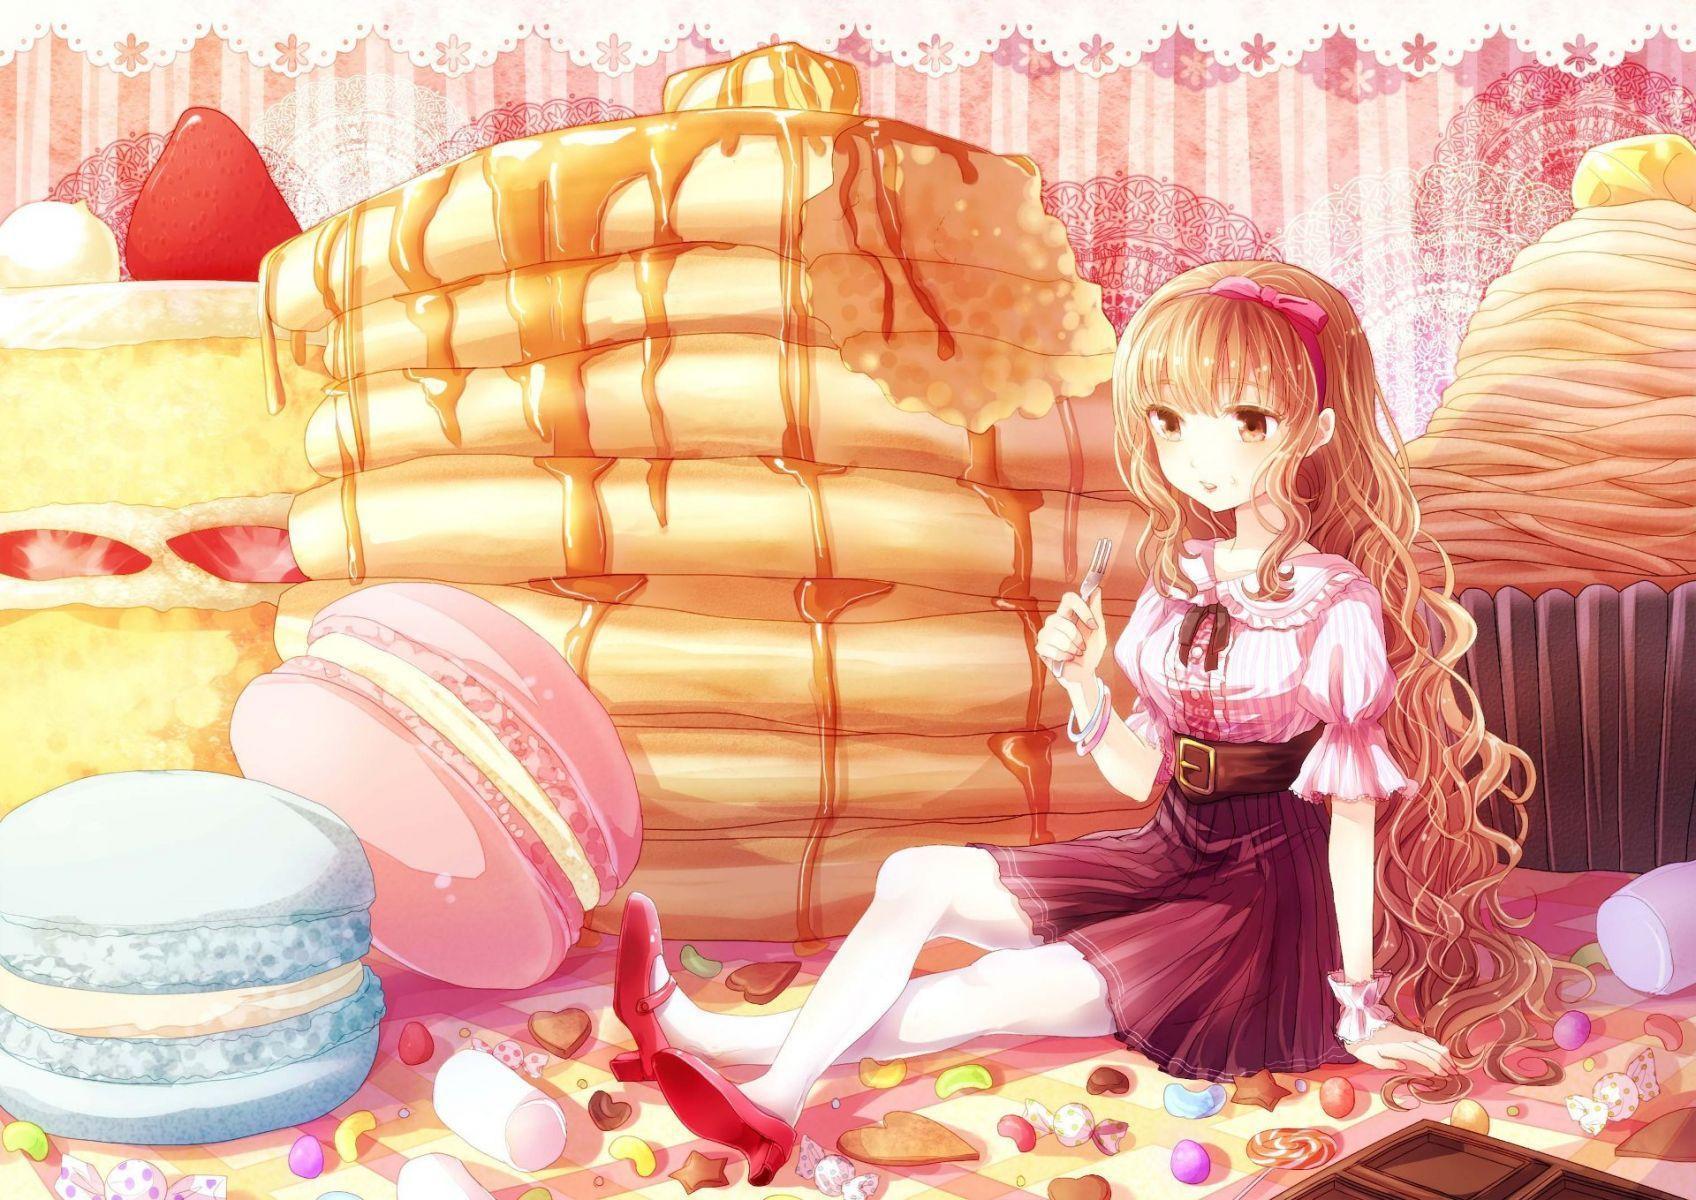 Girl Eating Cake. HD Anime Wallpaper for Mobile and Desktop